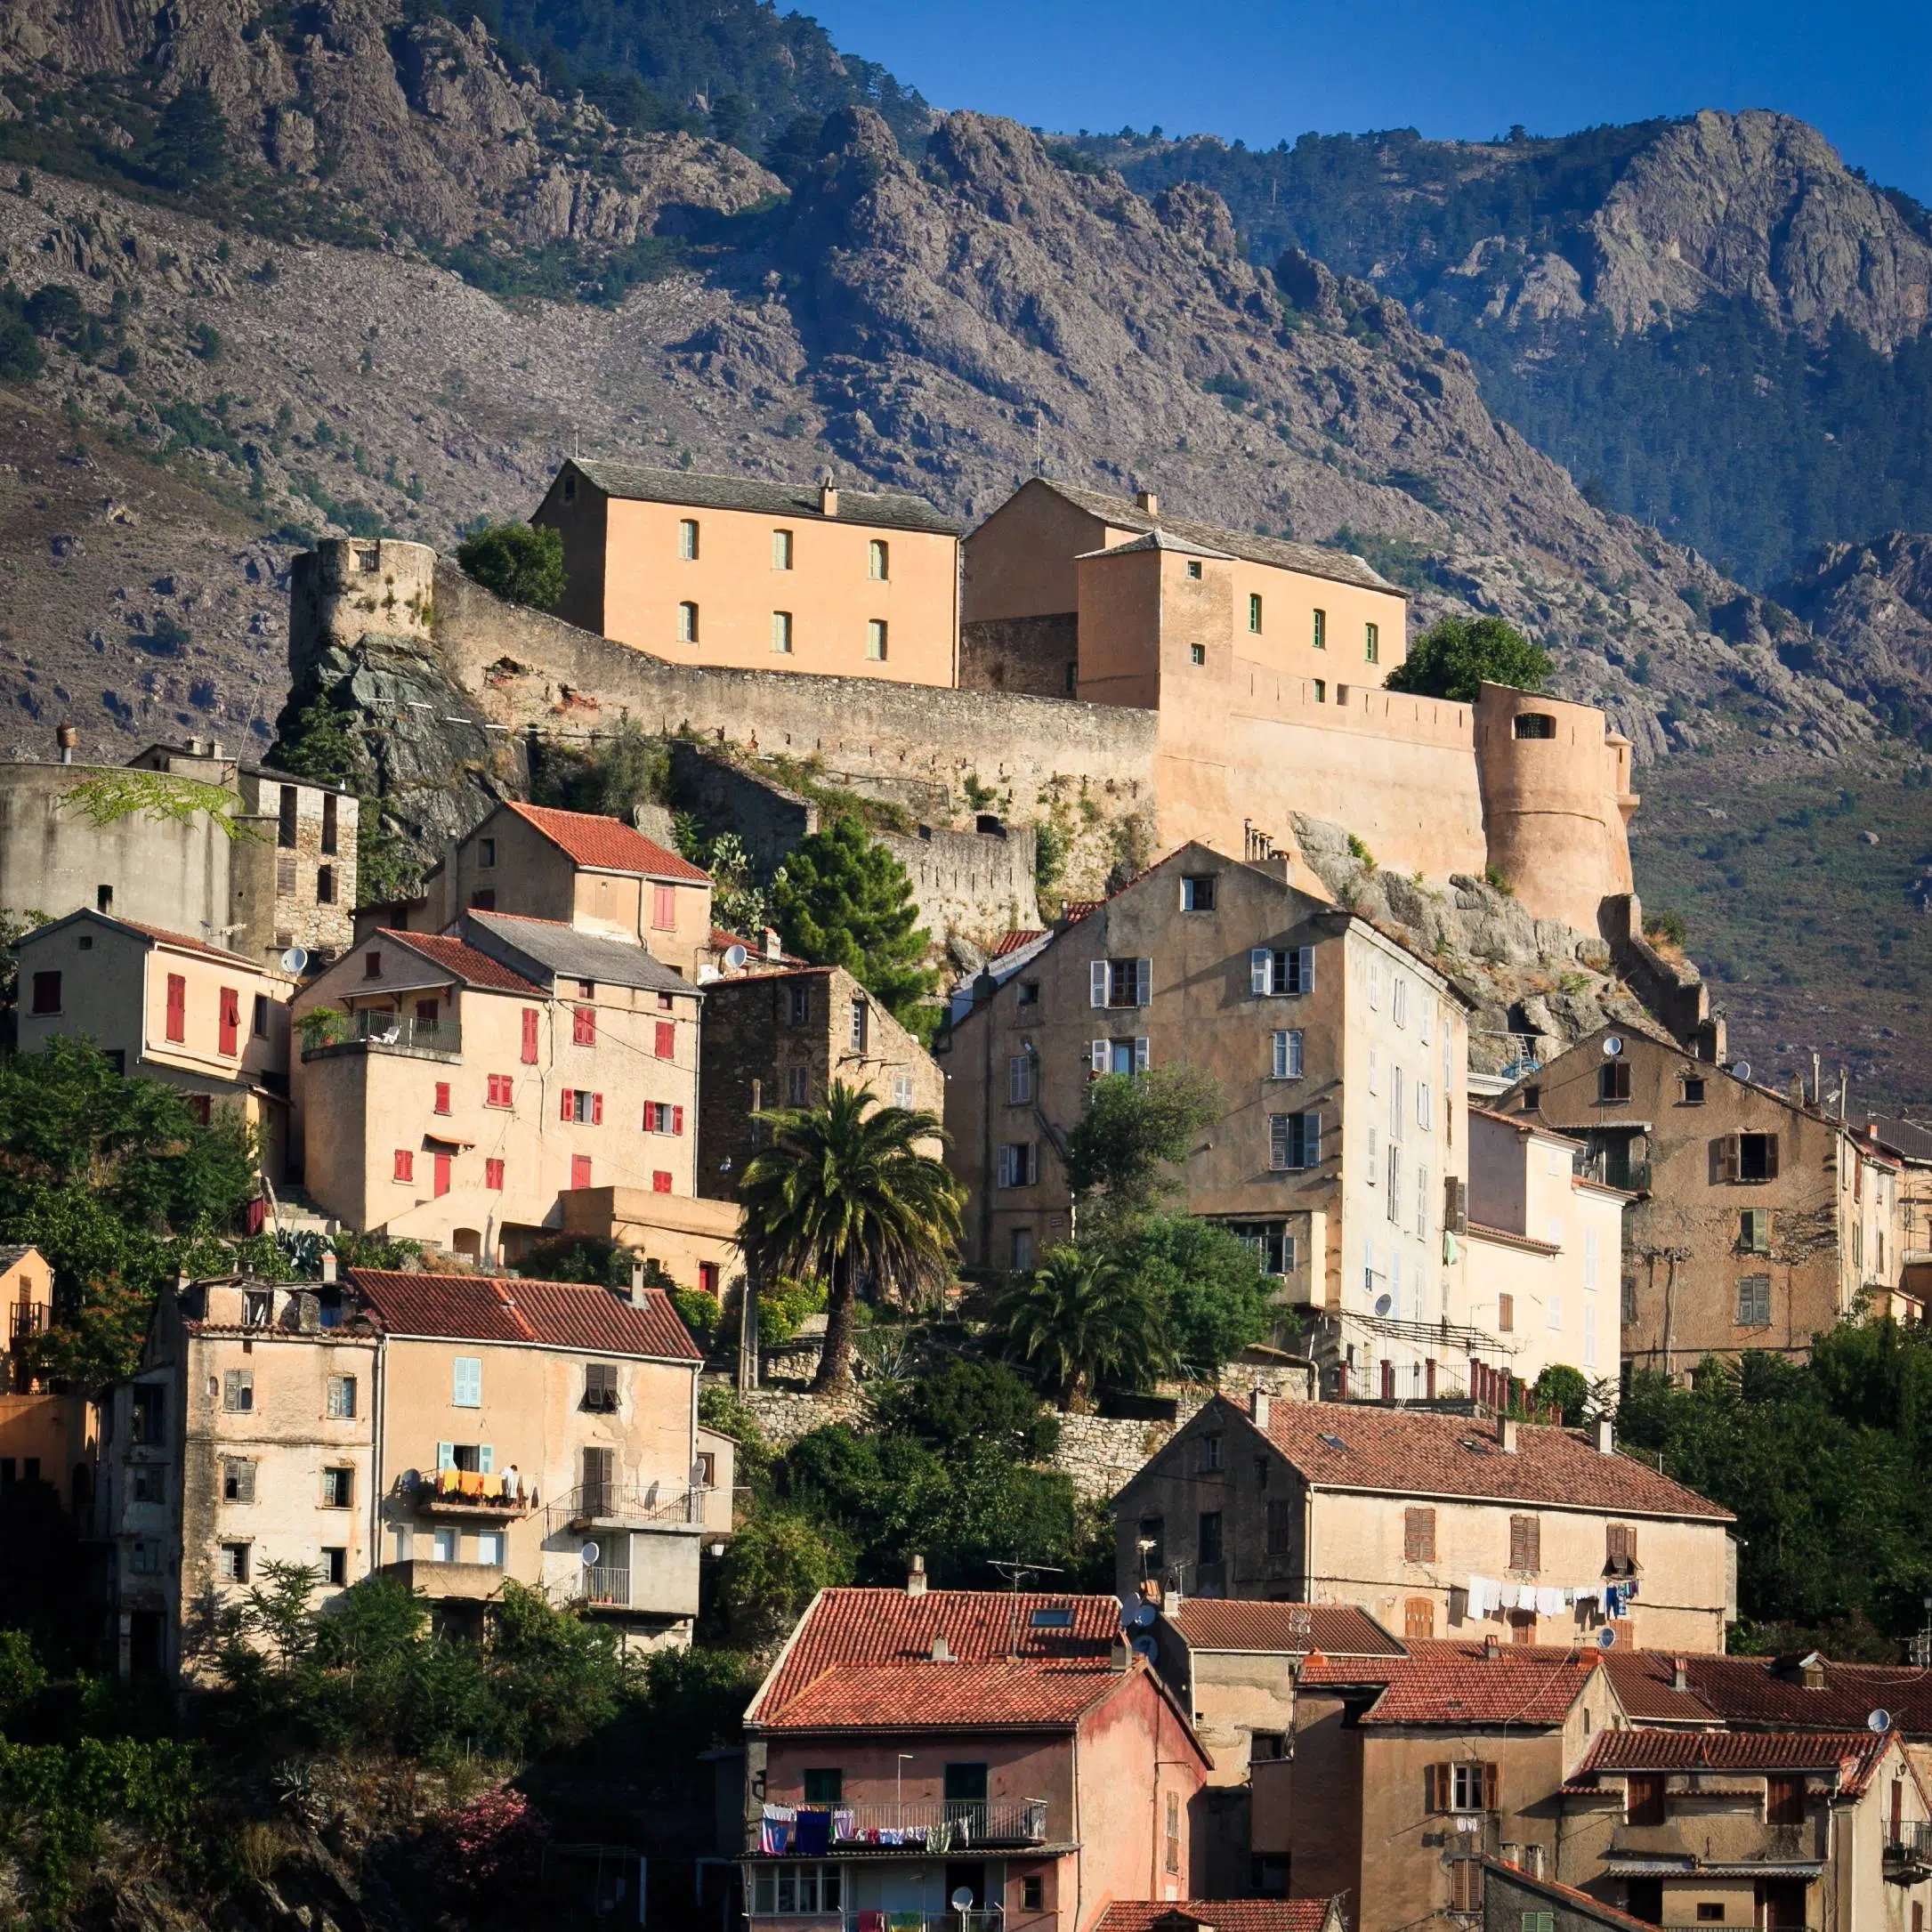 acheter un logement en Corse pour sa retraite